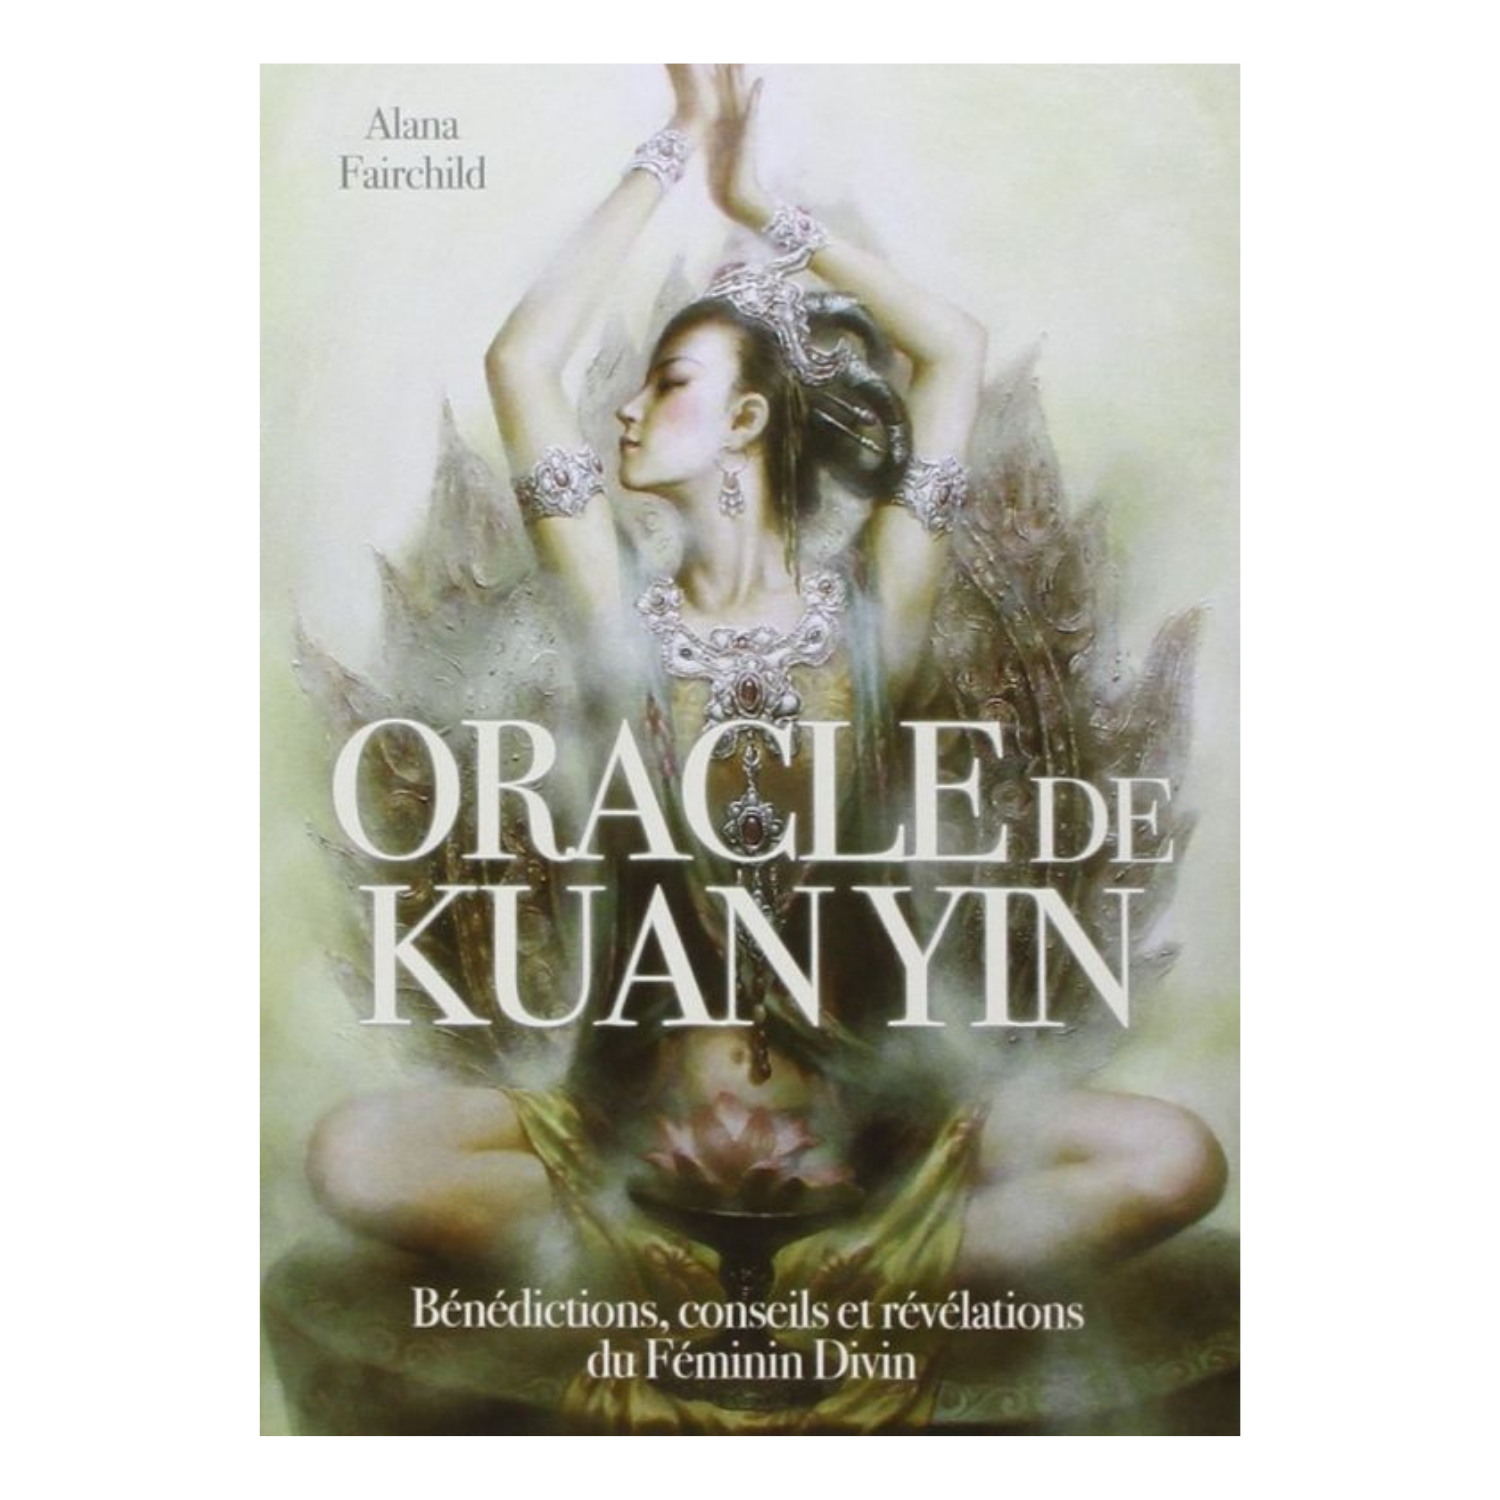 Oracle de Kuan Yin